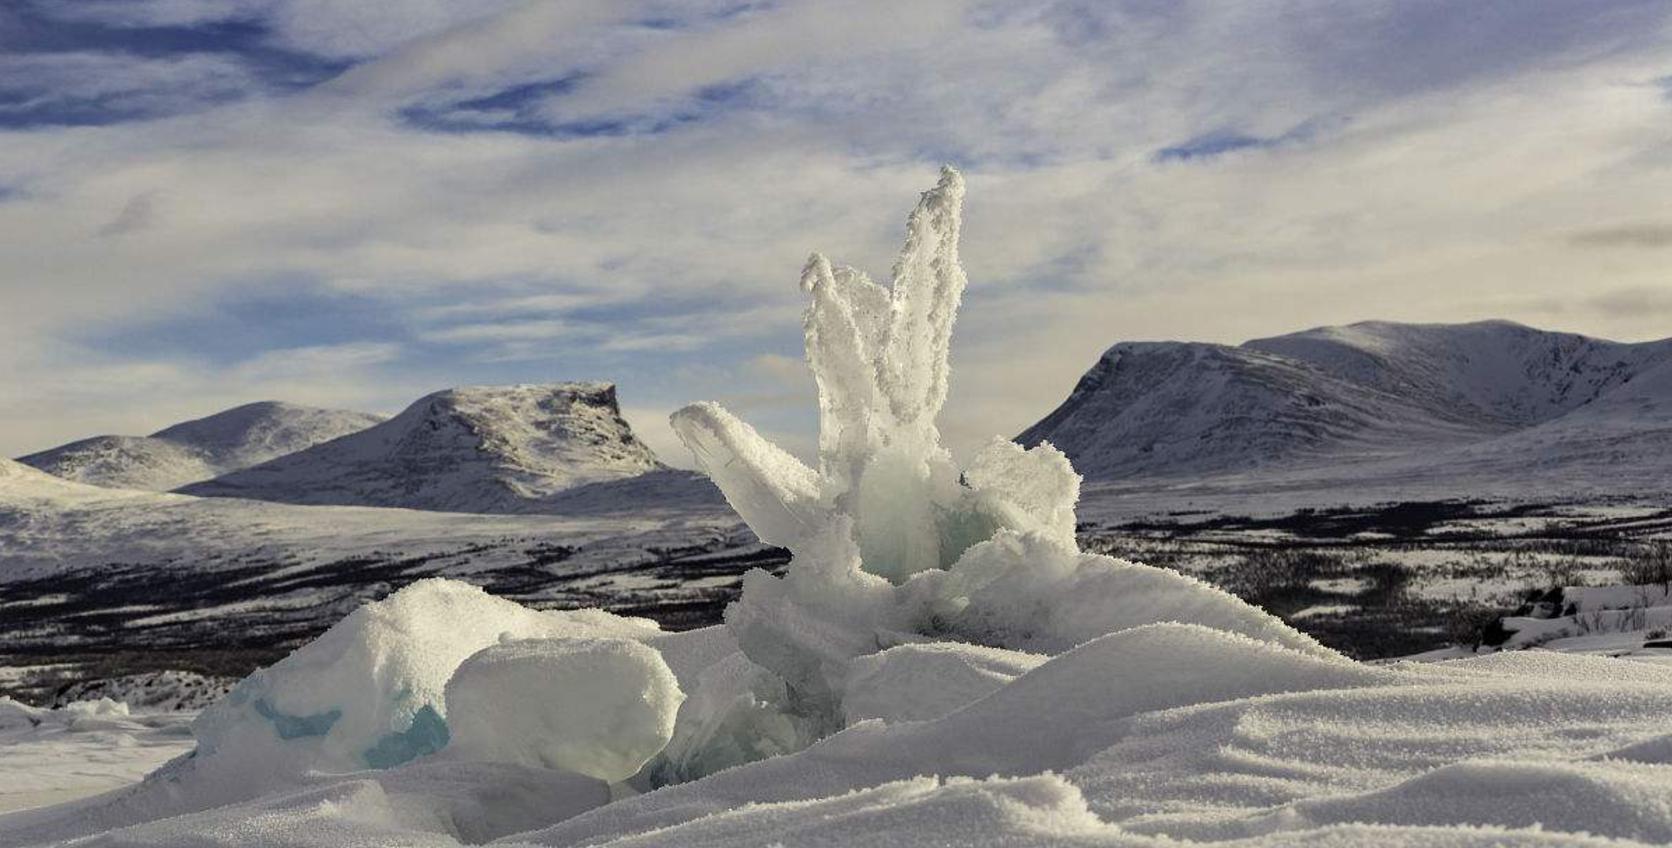 【世界旅游列表】去瑞典北部看极光 睡冰床 还有二哈队带你雪地溜达